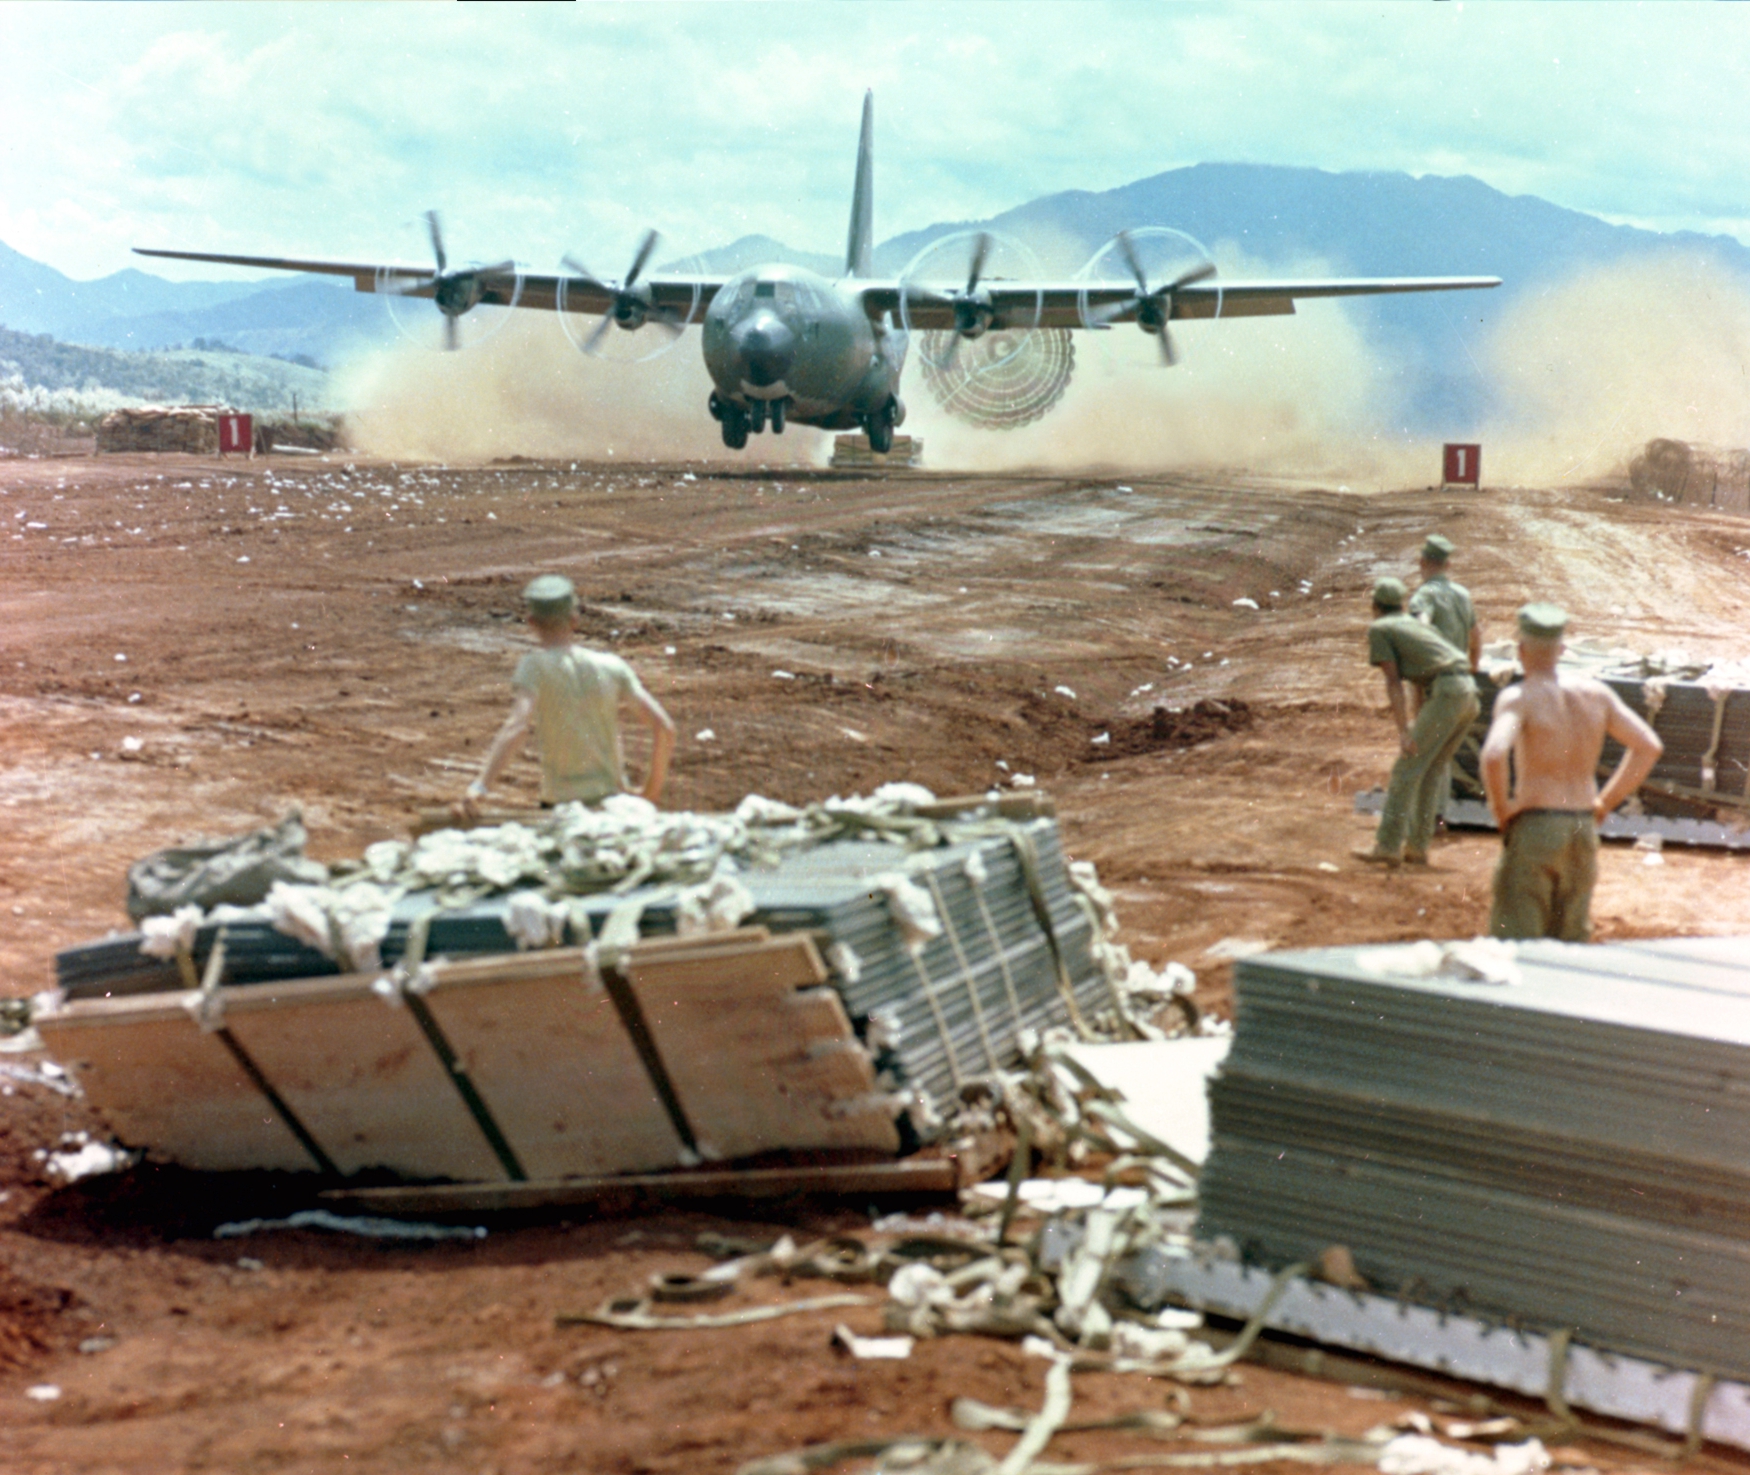 Caption: an allied C130 Hercules air drop during the Vietnam War.